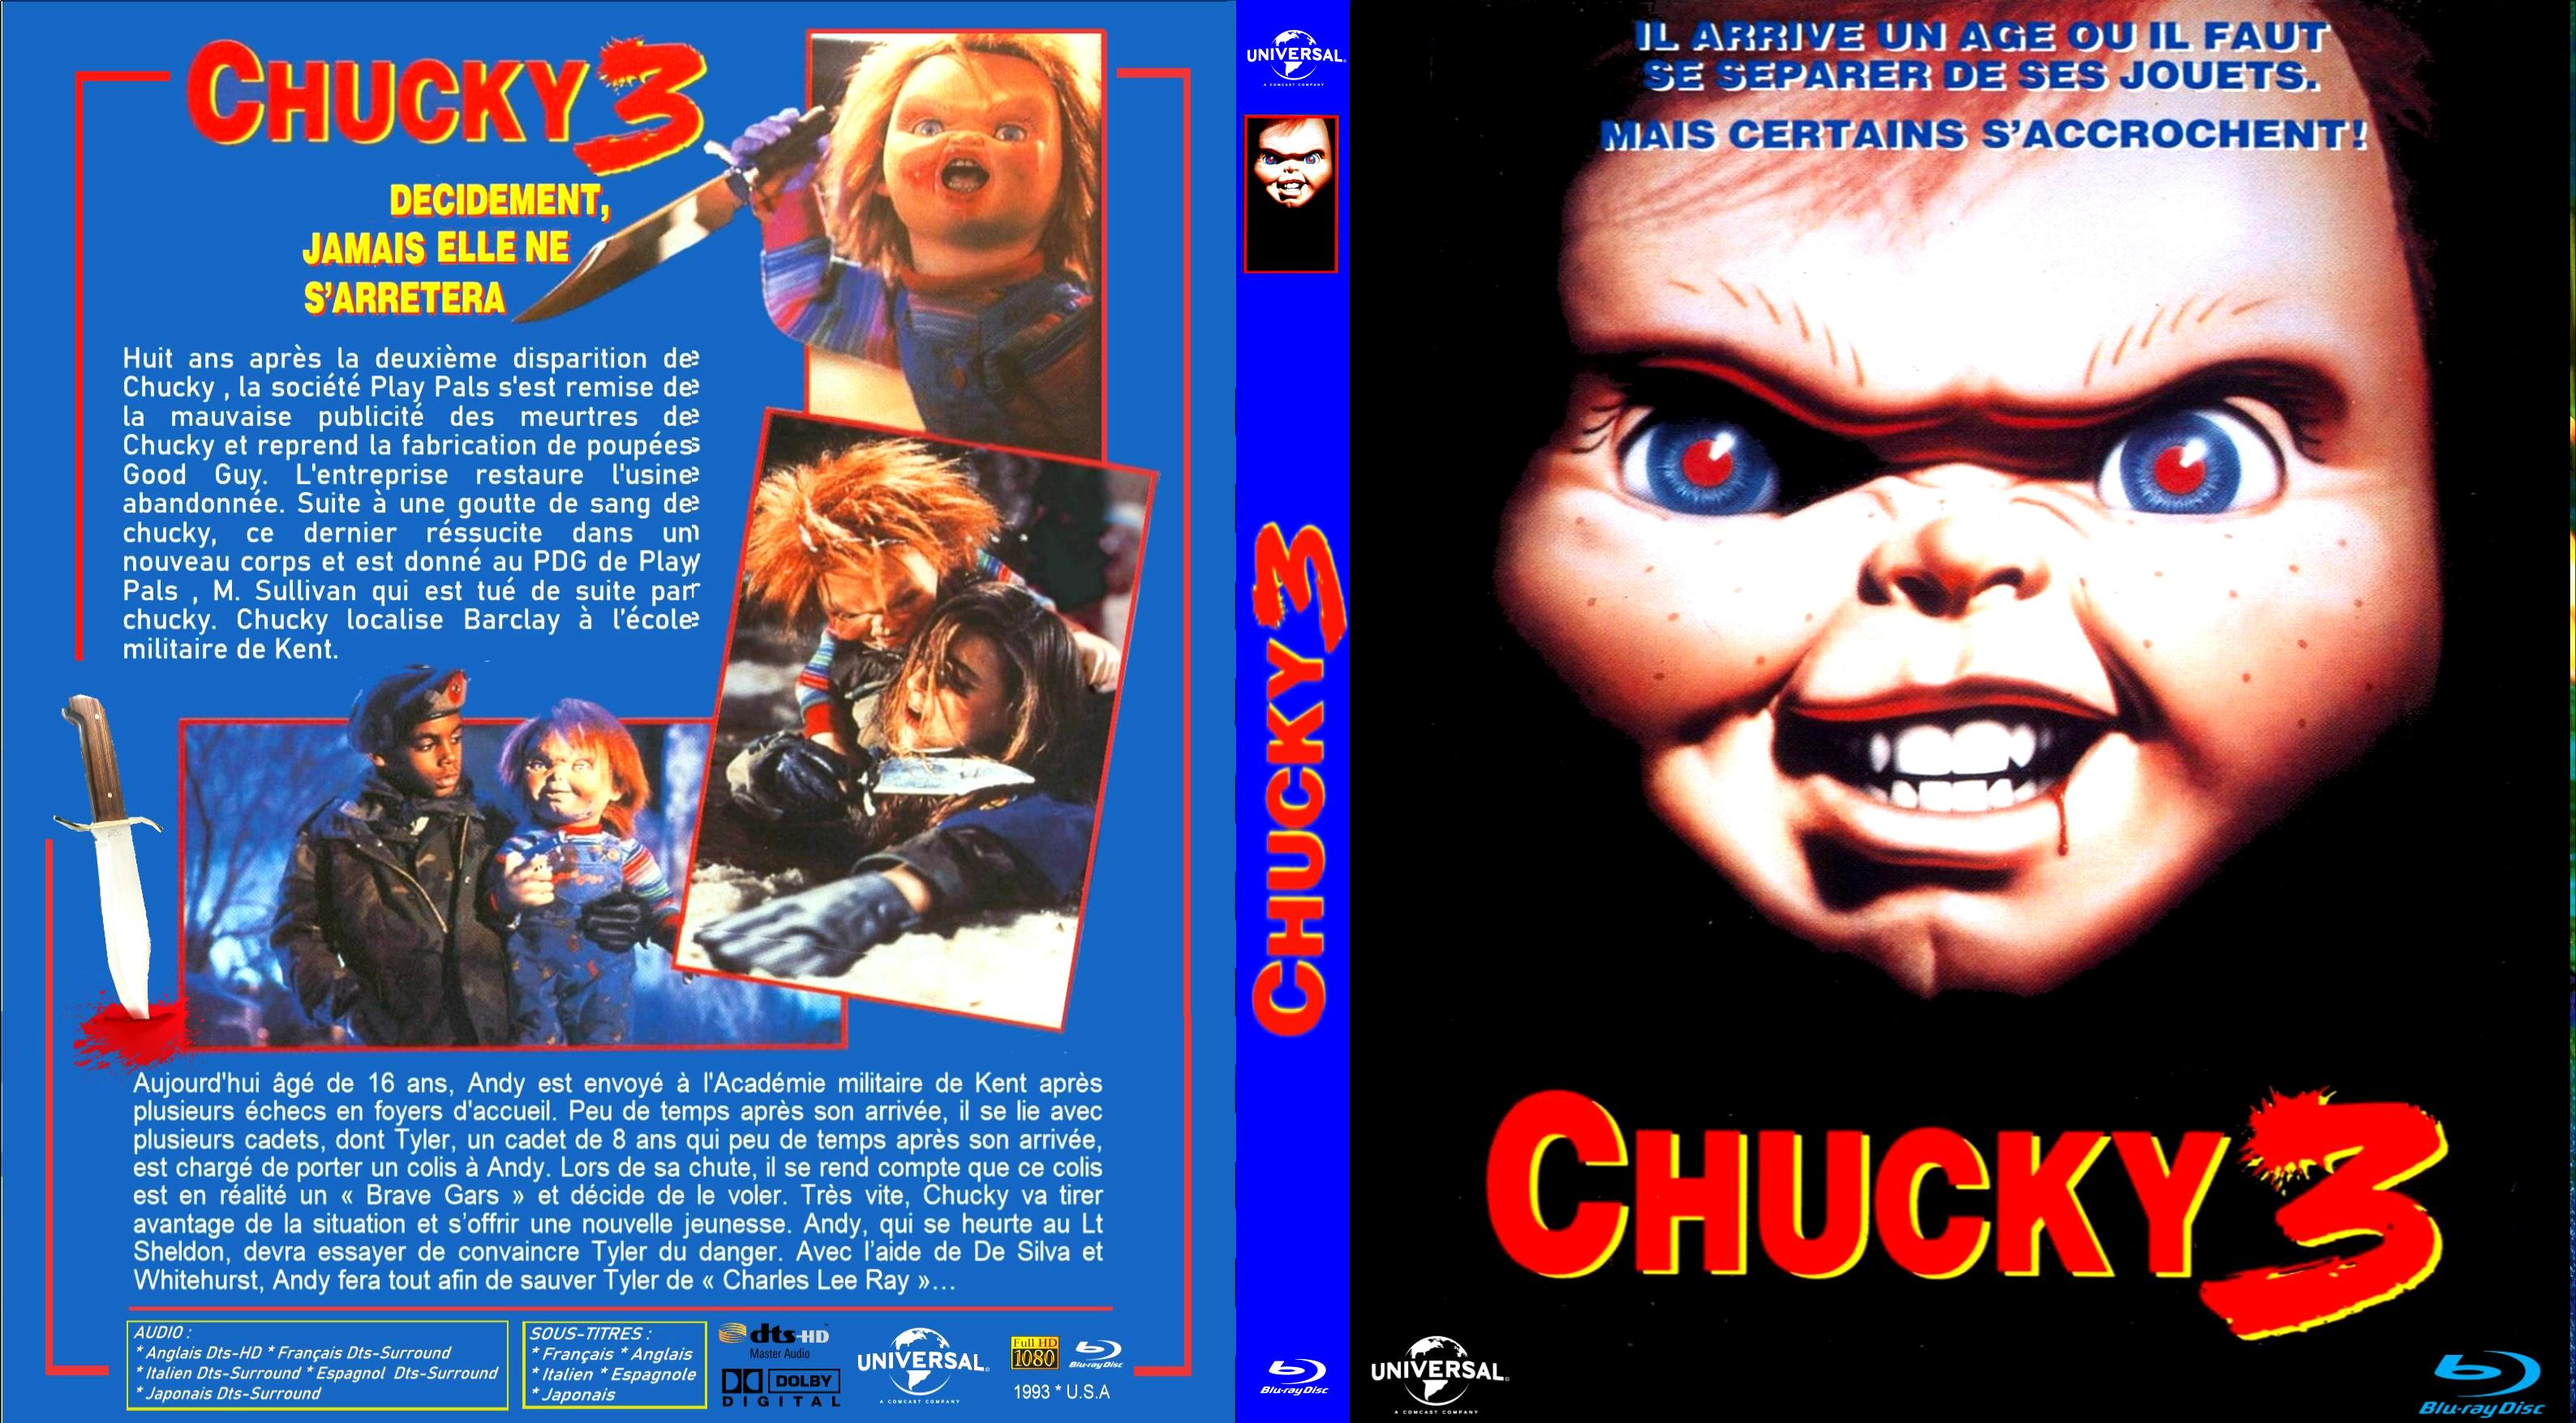 Jaquette DVD Chucky 3 custom (BLU-RAY) v2